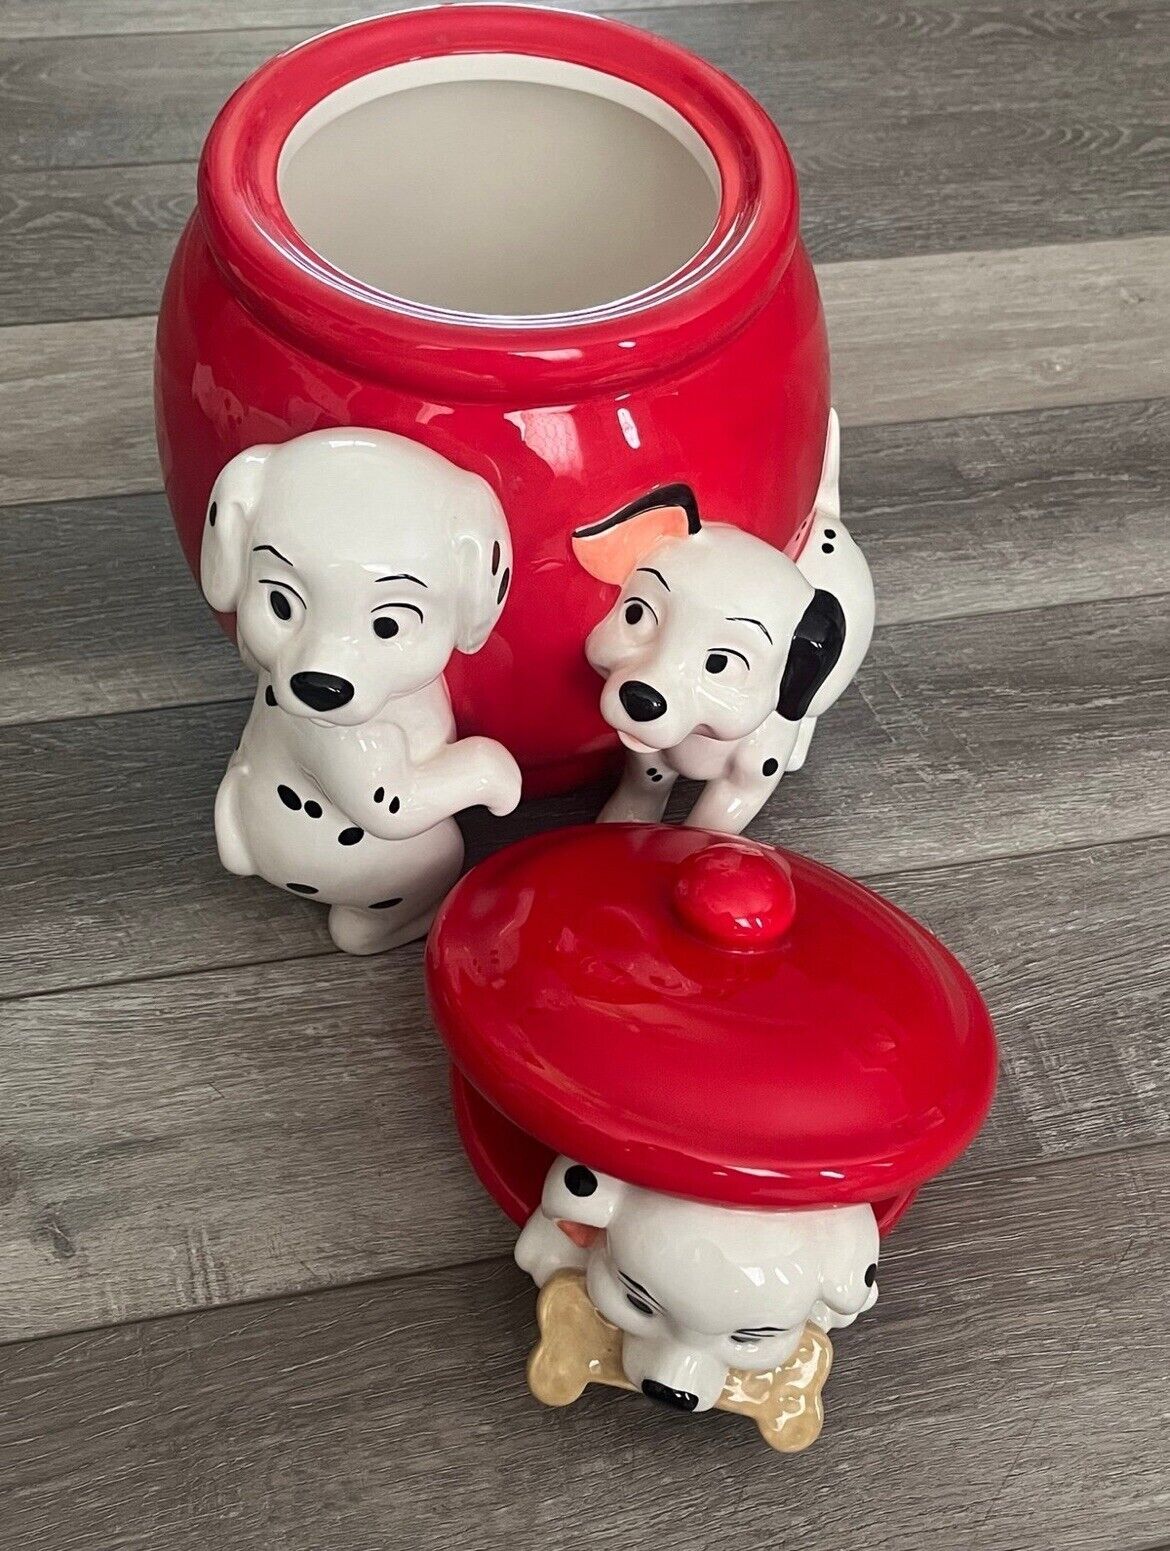 Disney Cookie Jar 101 Dalmatians Theme Excellent Condition Vintage Collectors